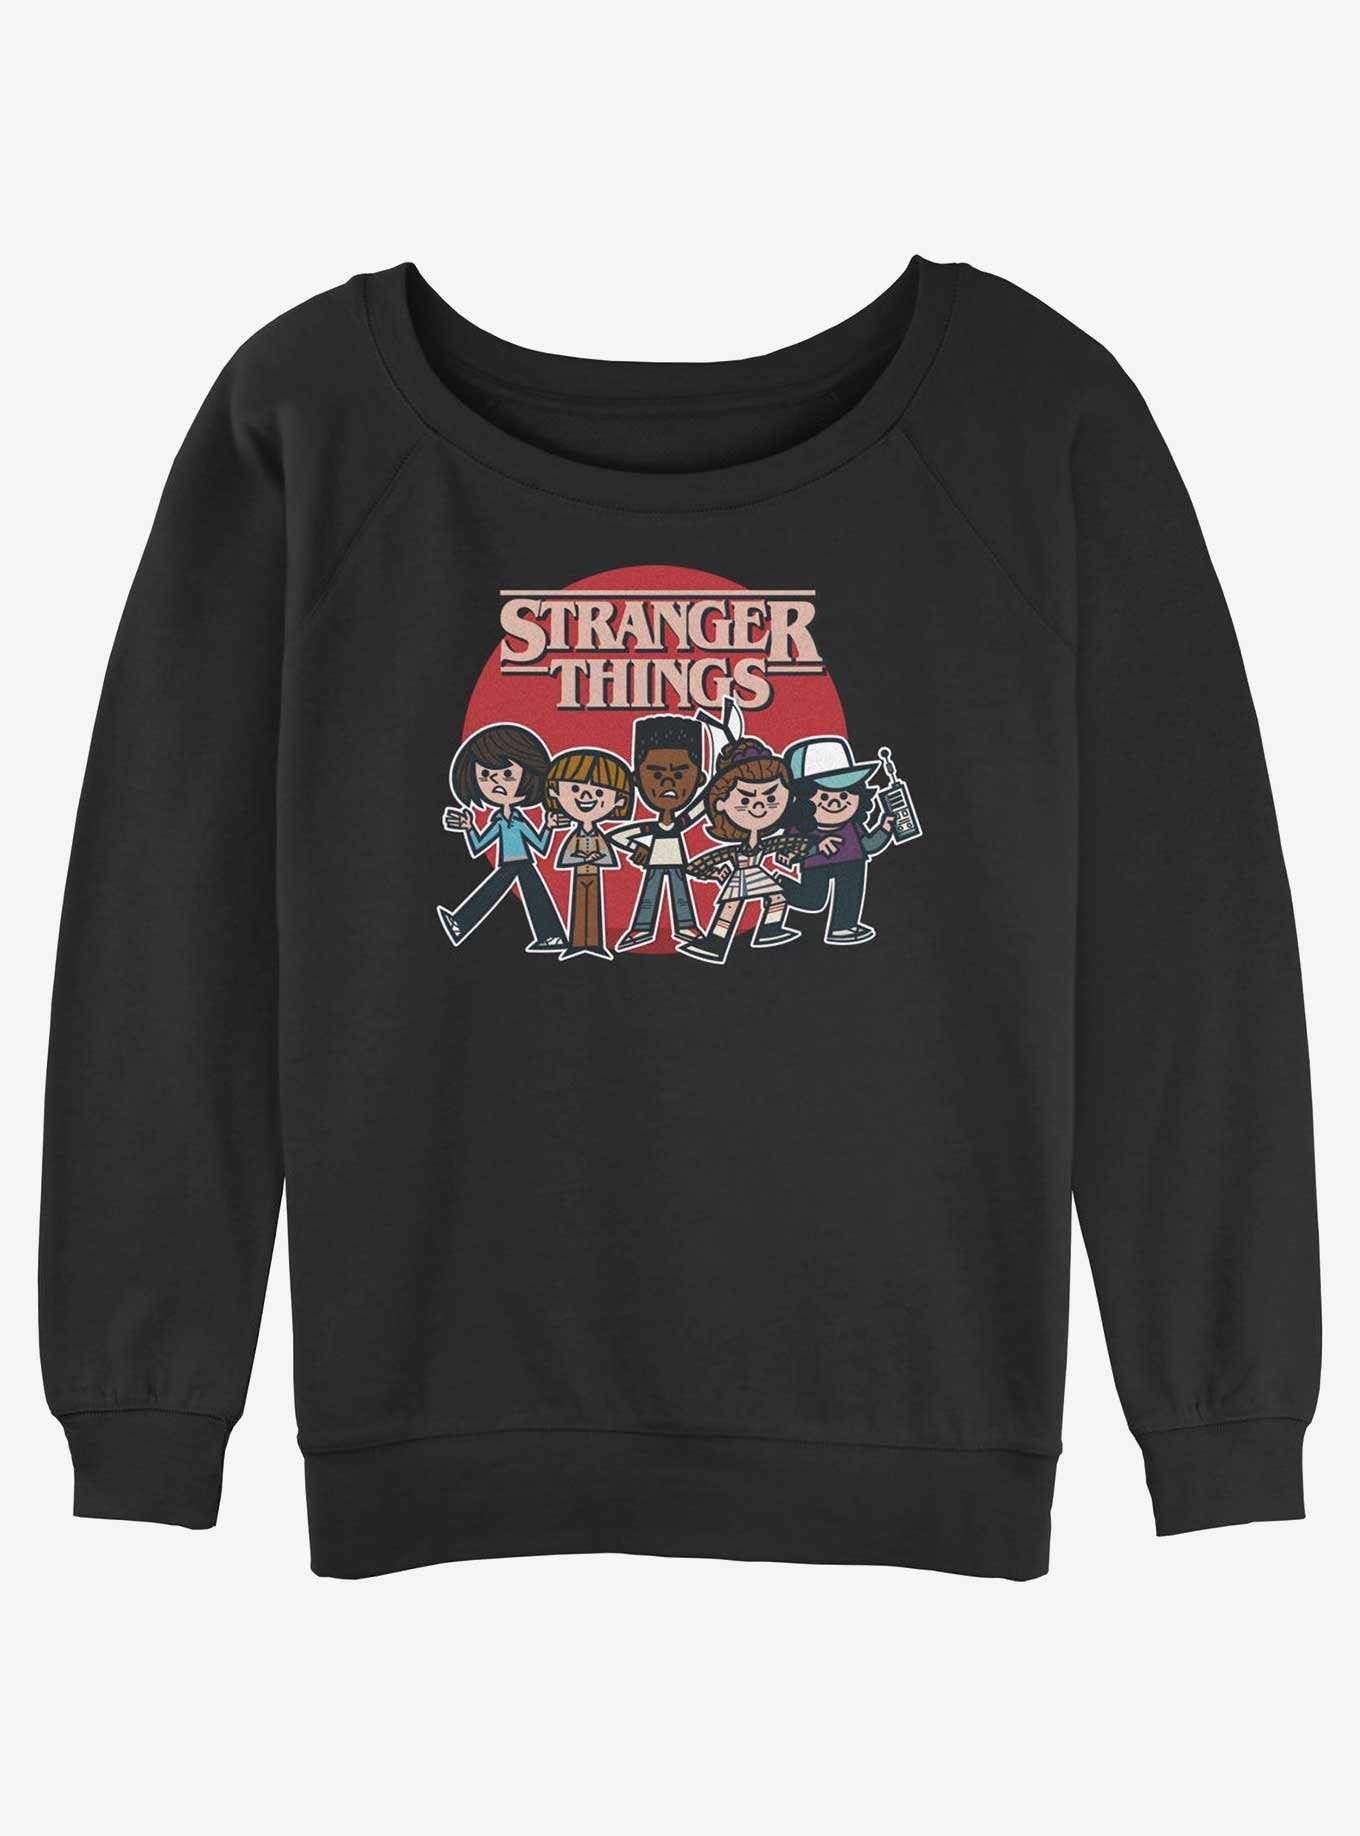 Stranger Things Toon Gang Womens Slouchy Sweatshirt, , hi-res